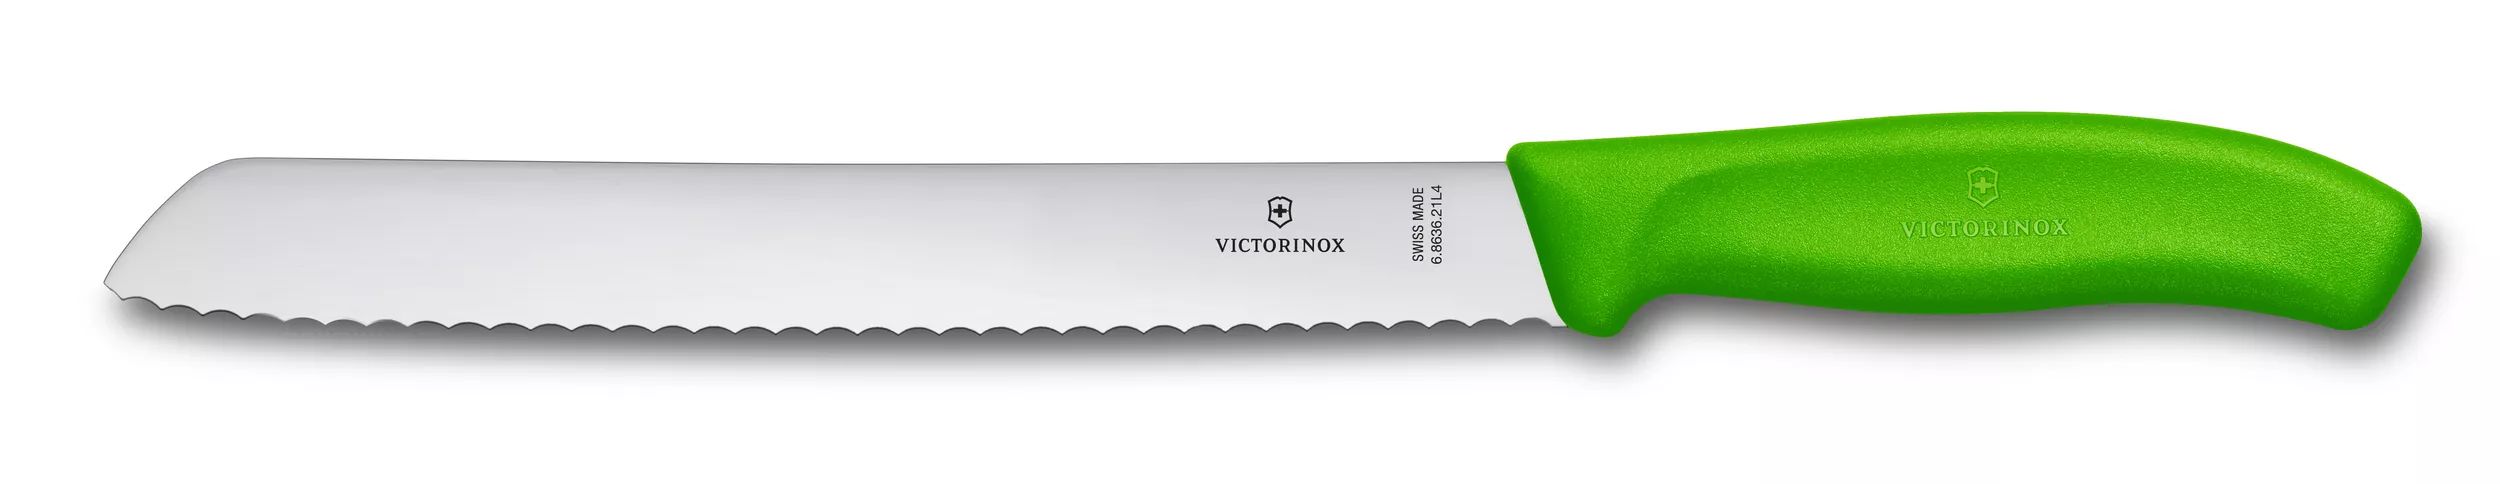 Swiss Classic 麵包刀-6.8636.21L4B